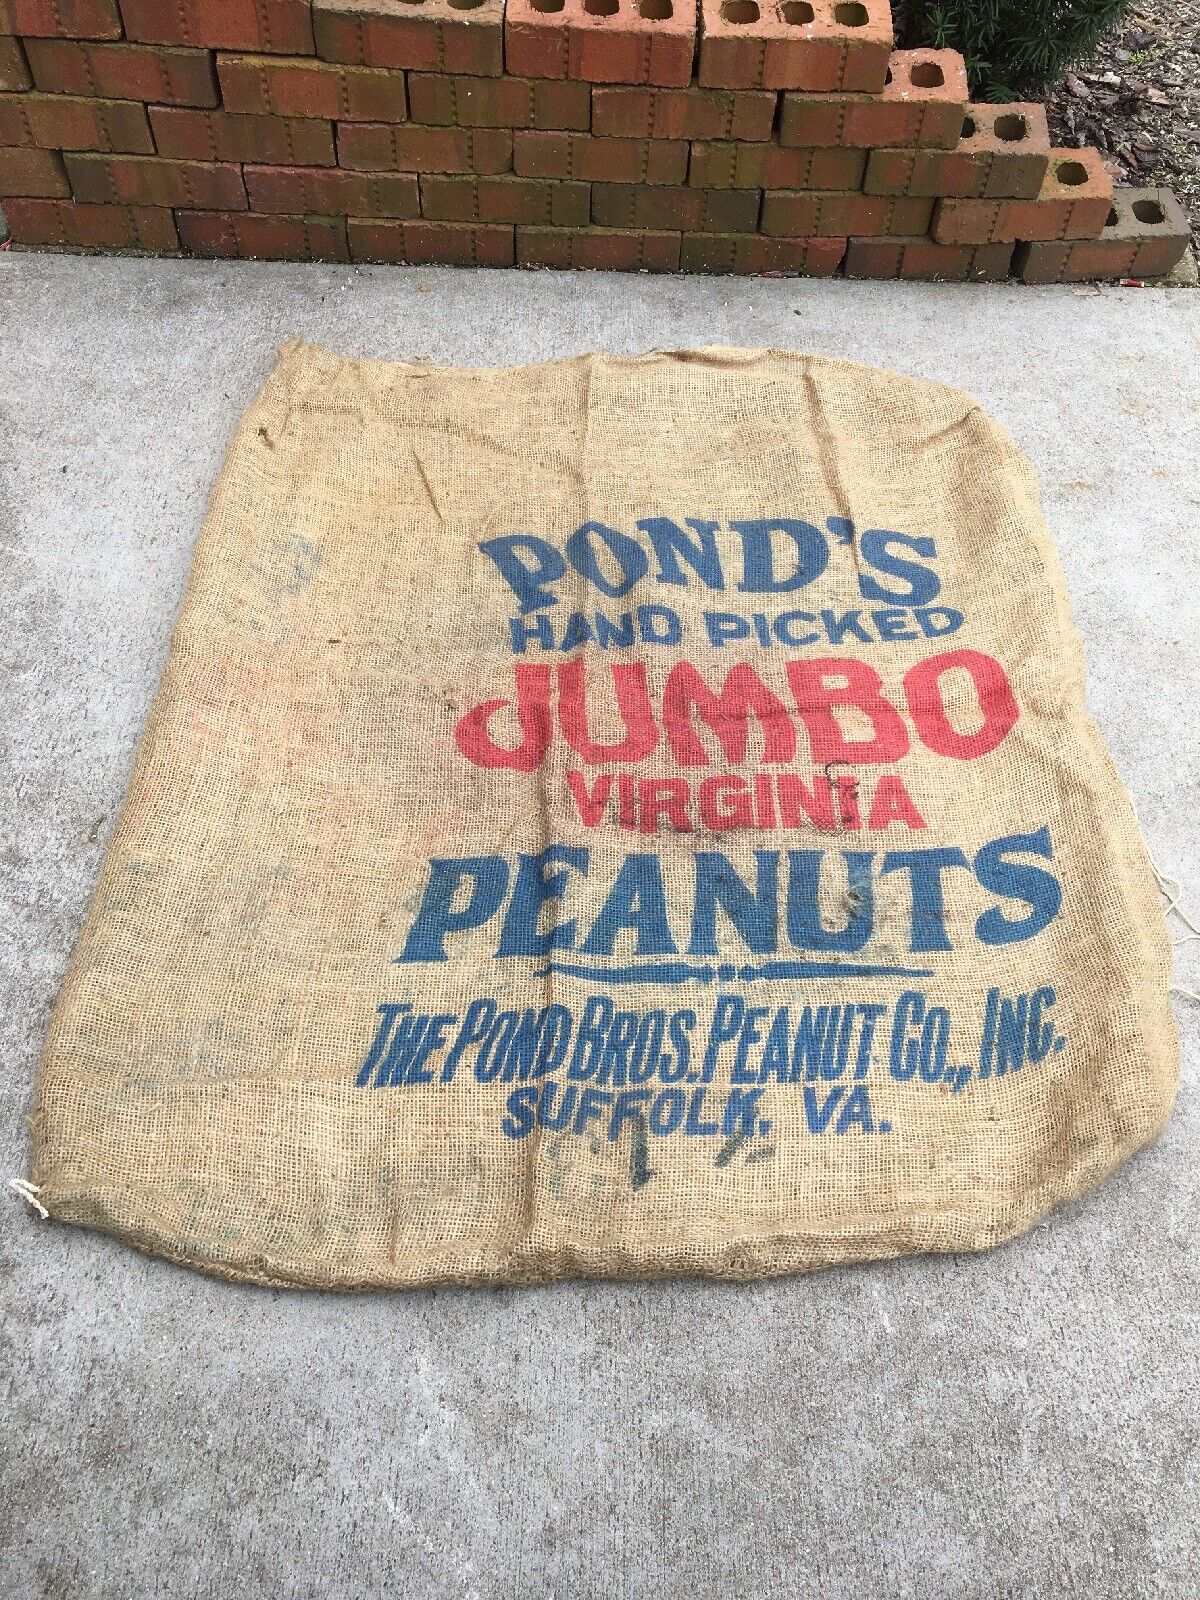 Vintage Burlap Feed Sack Pond’s Hand Picked Jumbo Peanuts Suffolk Virginia